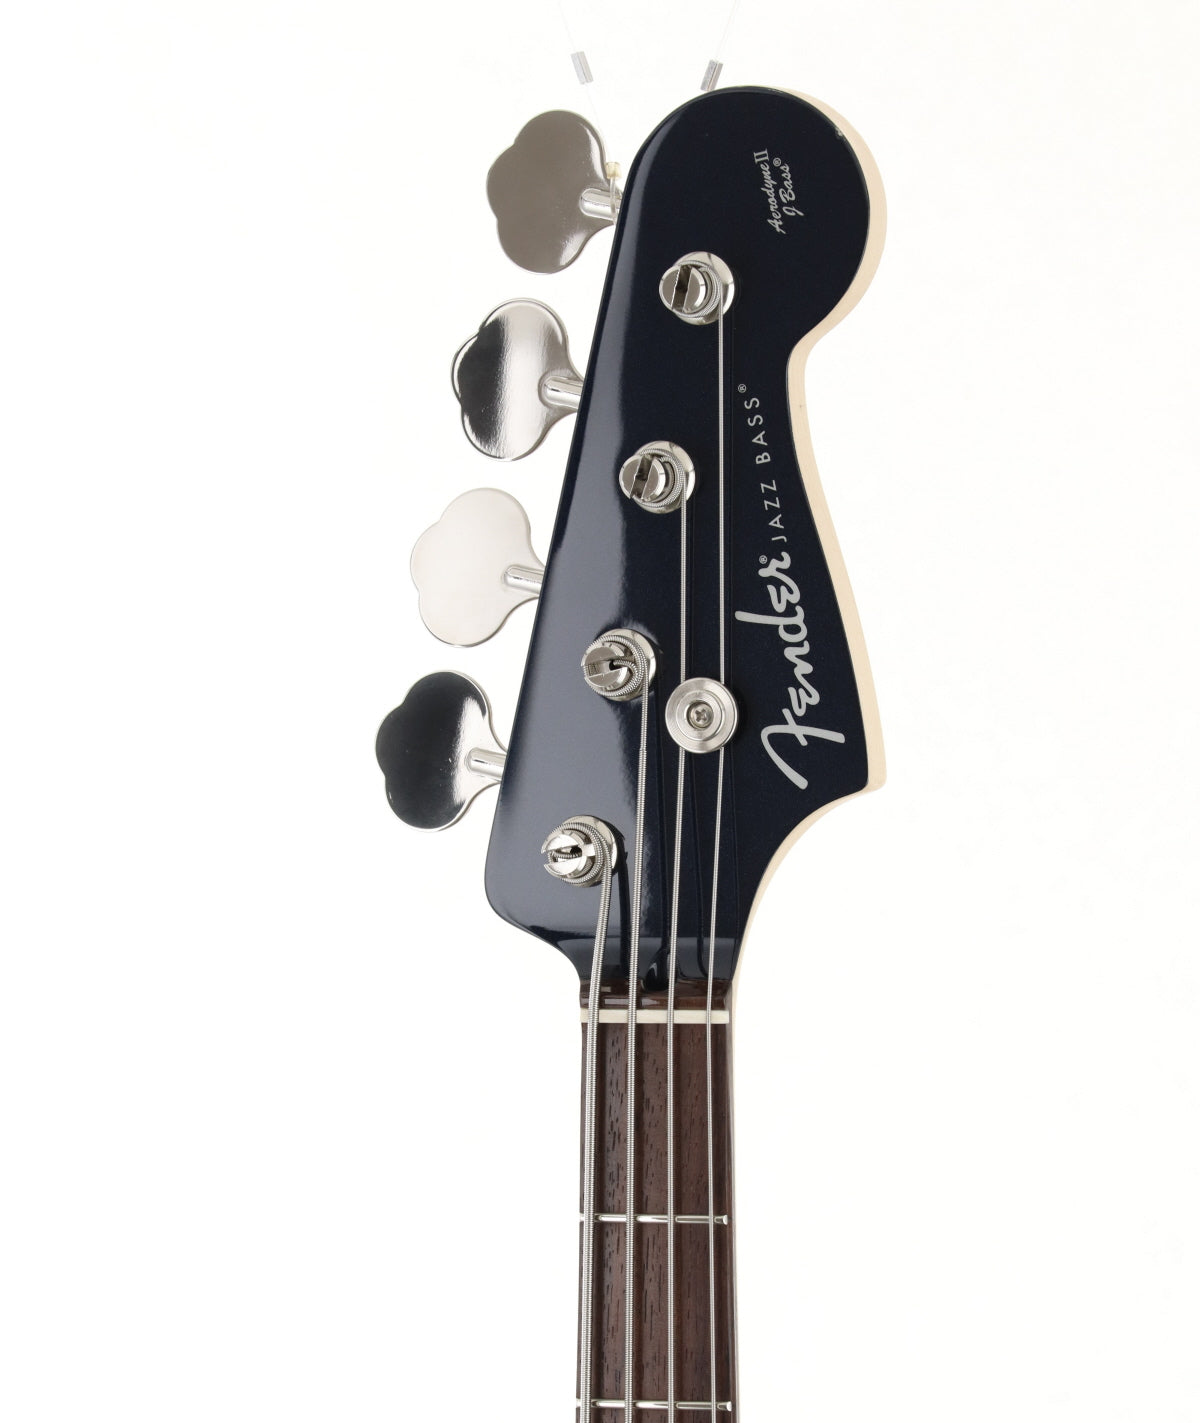 [SN JD19014569] USED Fender / Made in Japan Aerodyne II Jazz Bass Gun Metallic Blue [03]